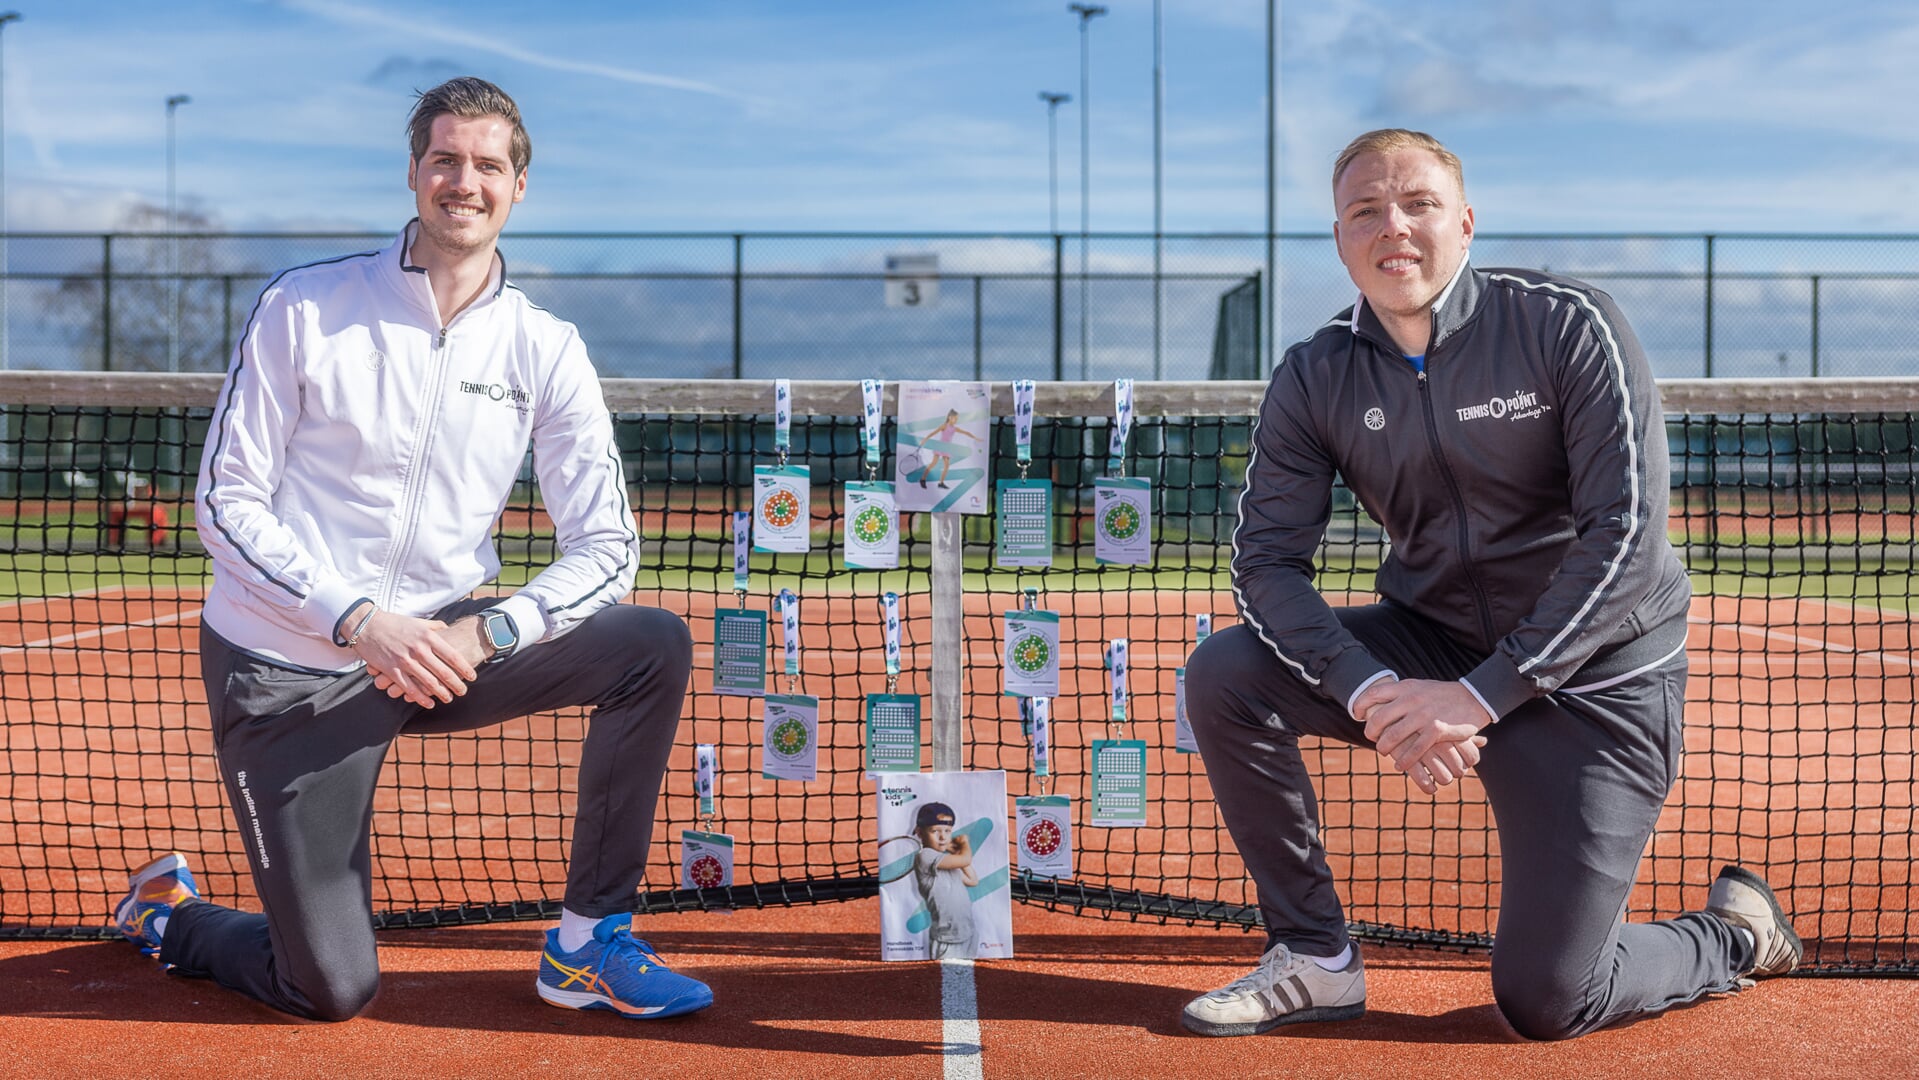 Sem Middelhoven en Remco van Ewijk zien graag dat meer kinderen gaan tennissen.